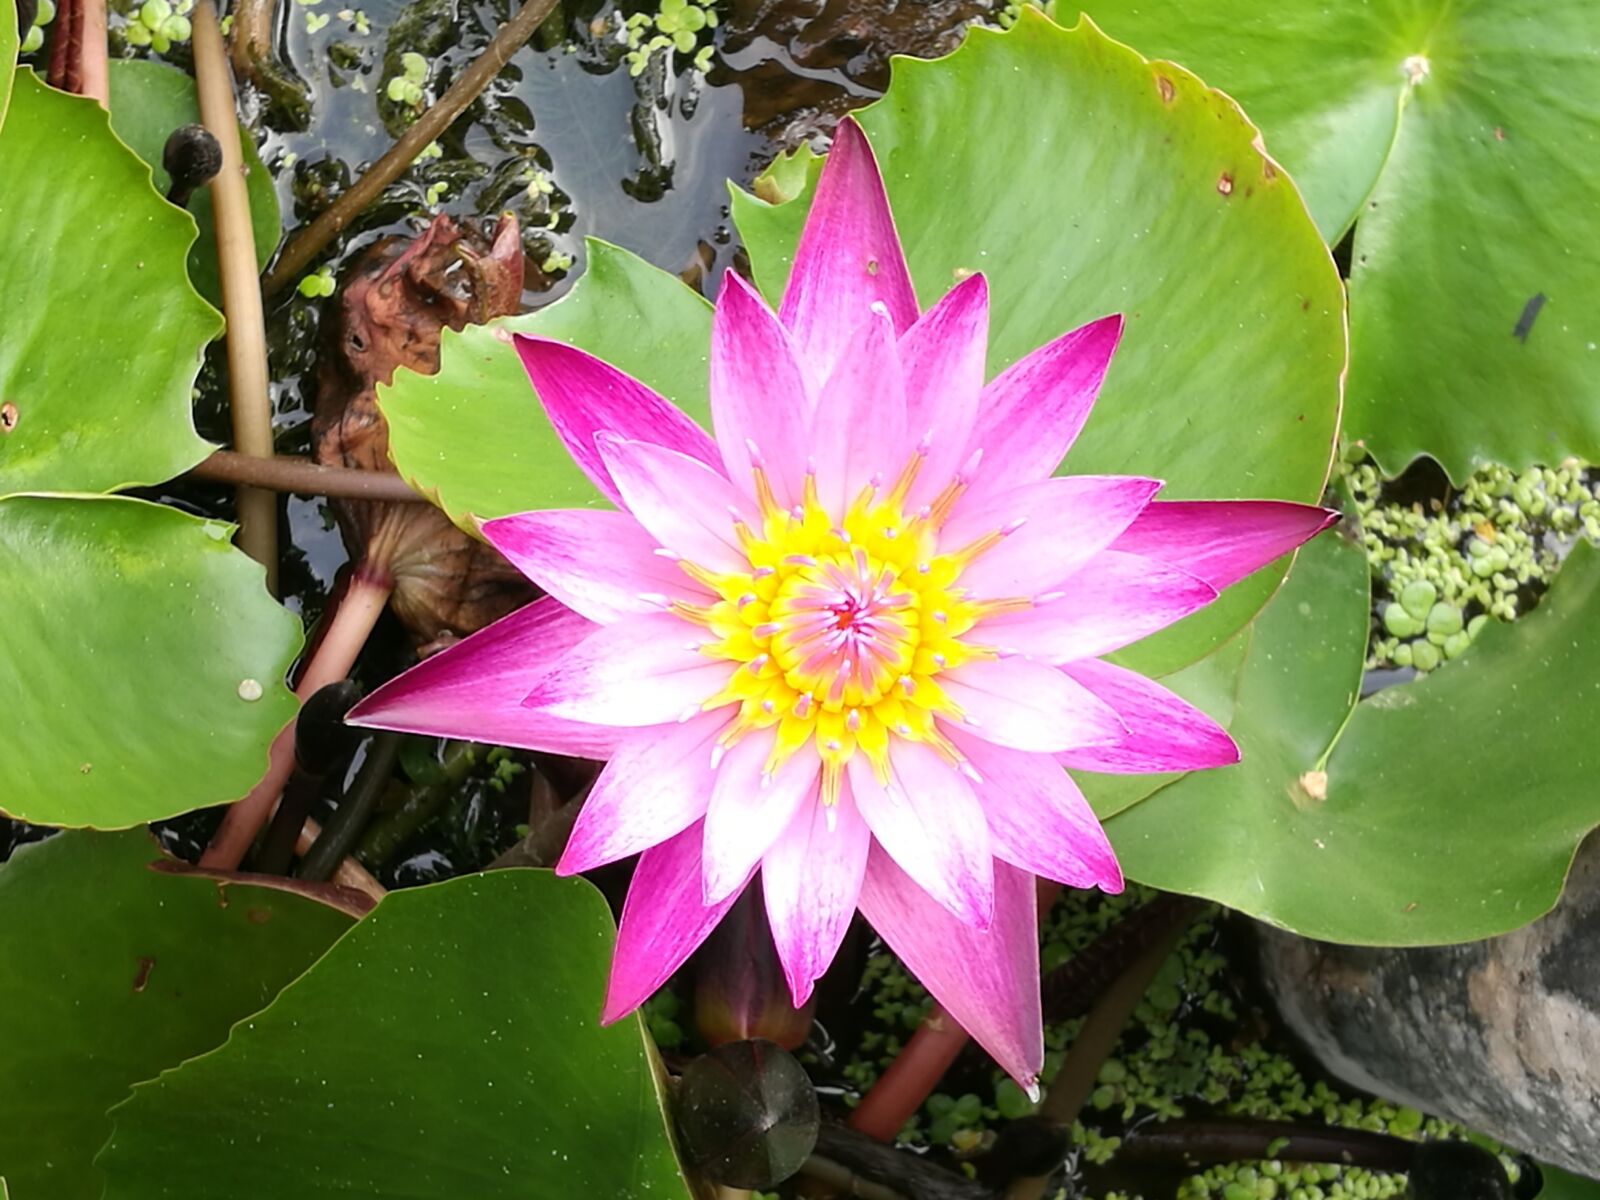 HUAWEI P9 Plus sample photo. Lotus, pink, flower photography